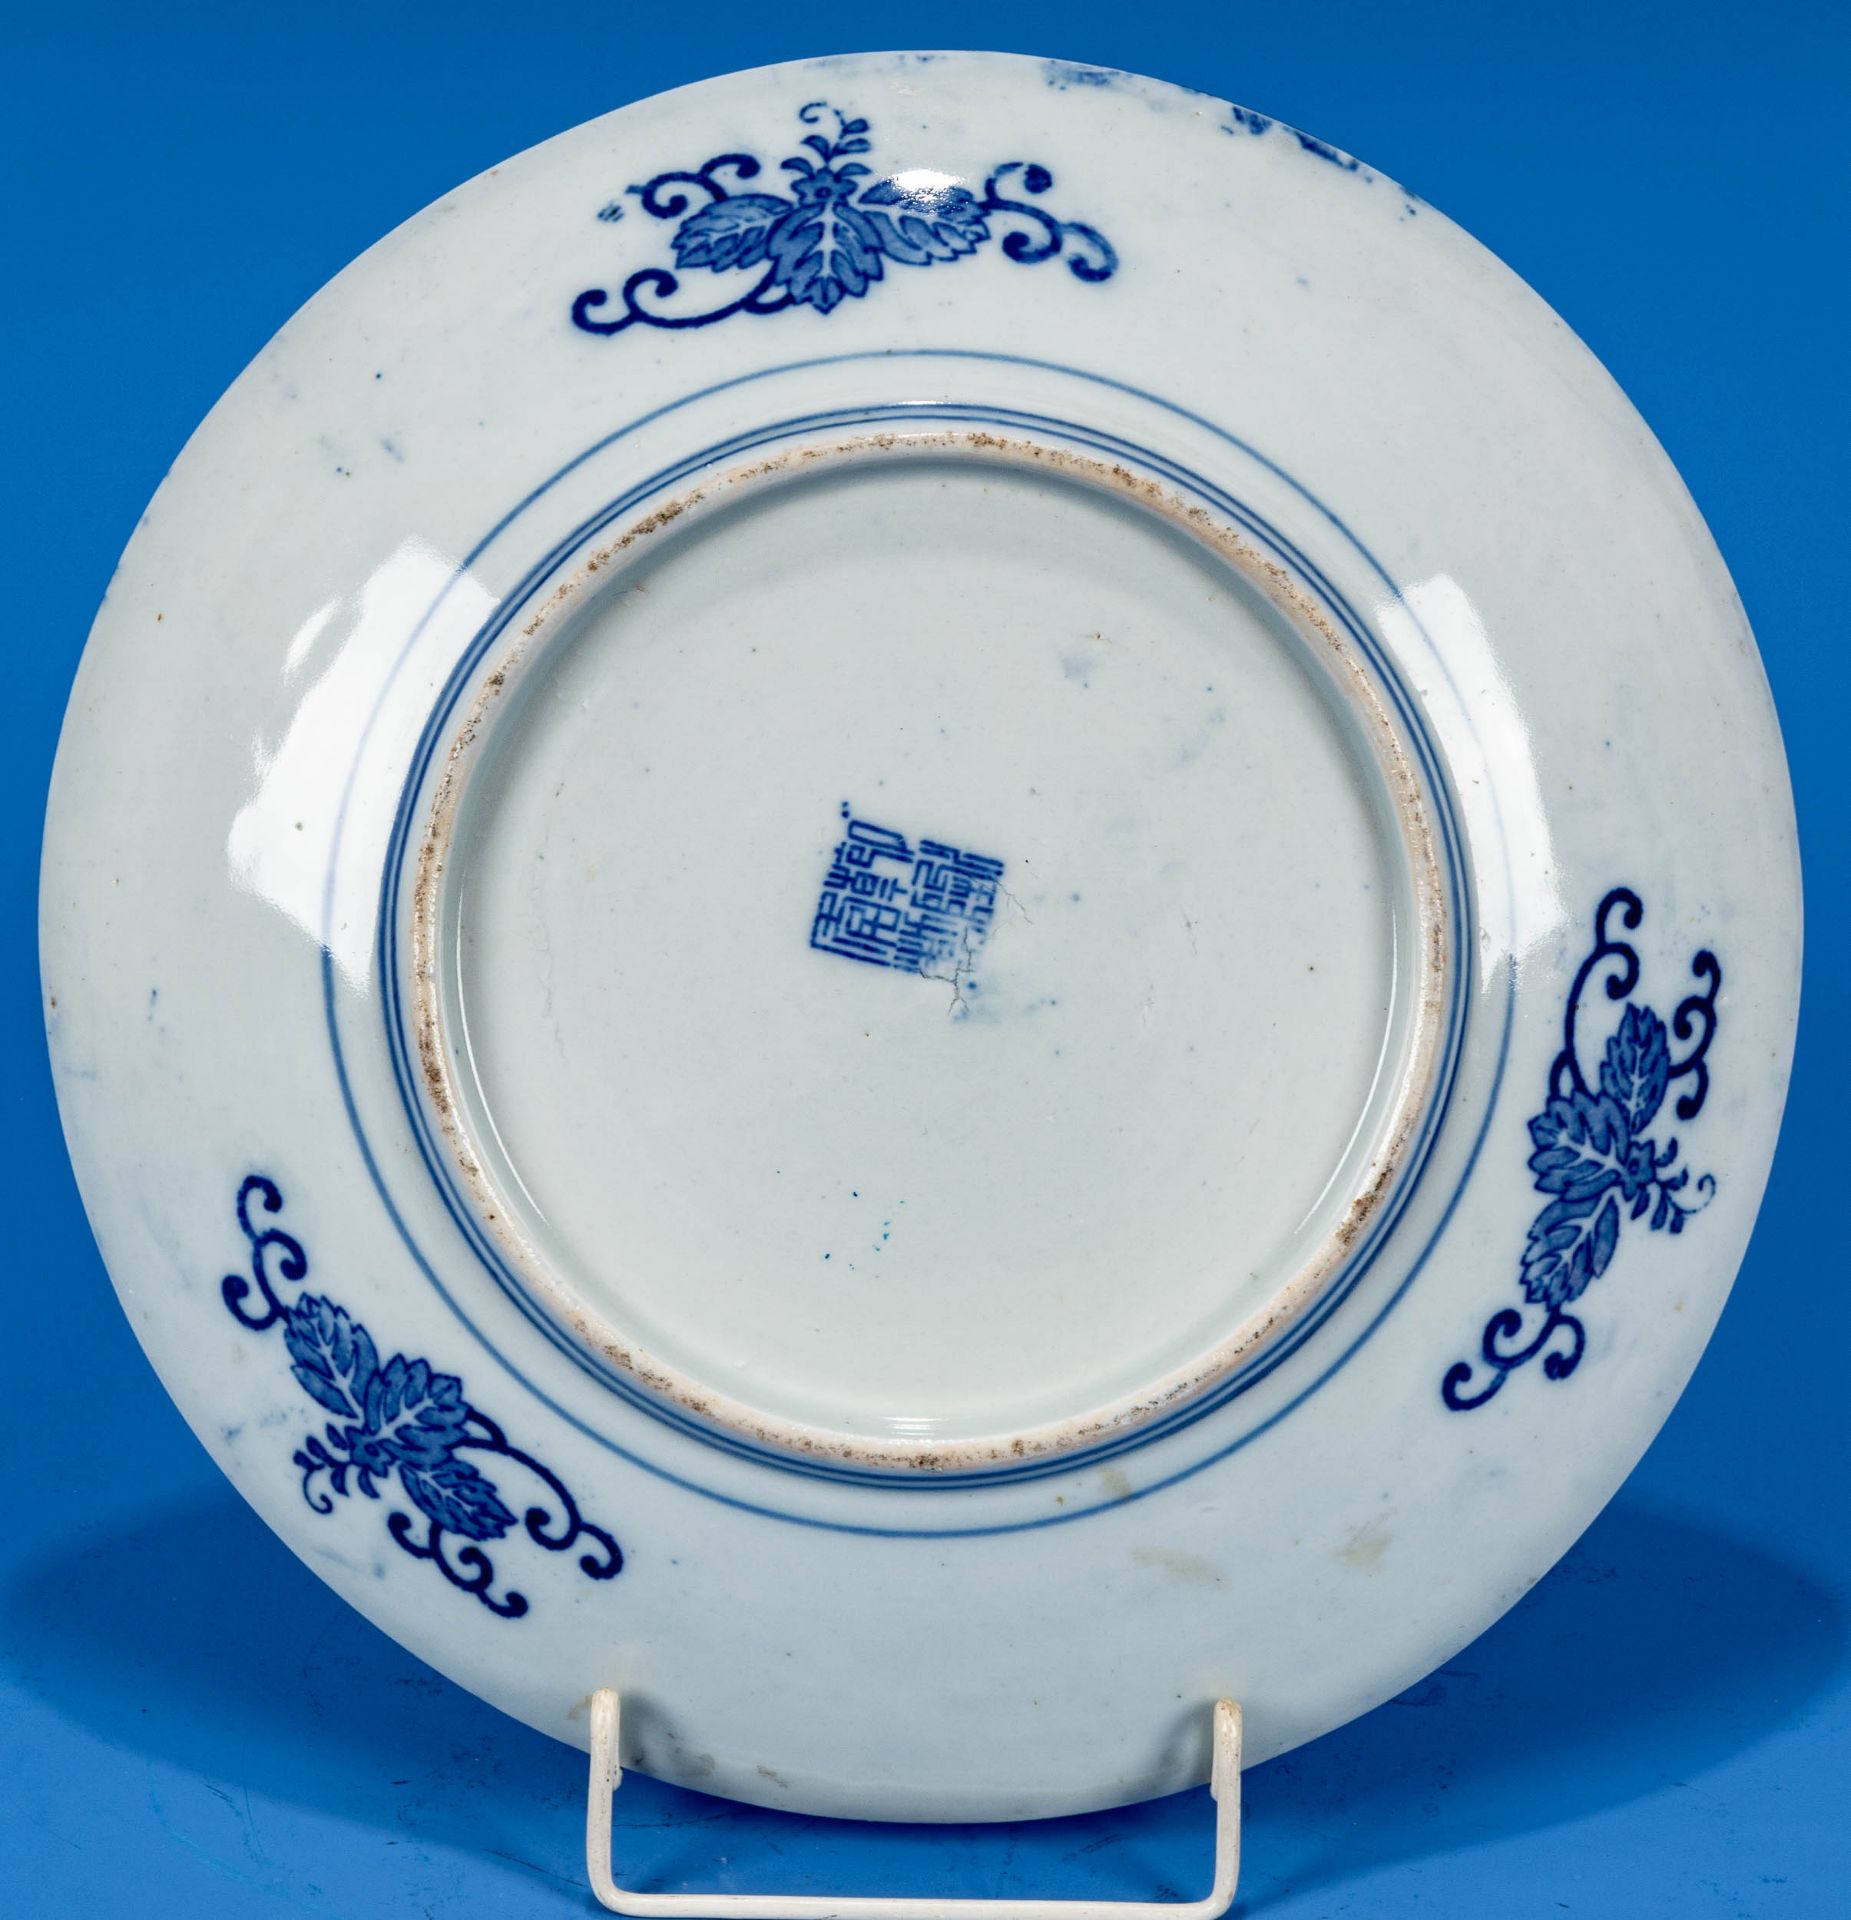 Großer runder Schauteller, China 20. Jhdt., Blaudekore, bodenseitig Vier-Zeichen-Marke in Blau; unb - Bild 3 aus 4